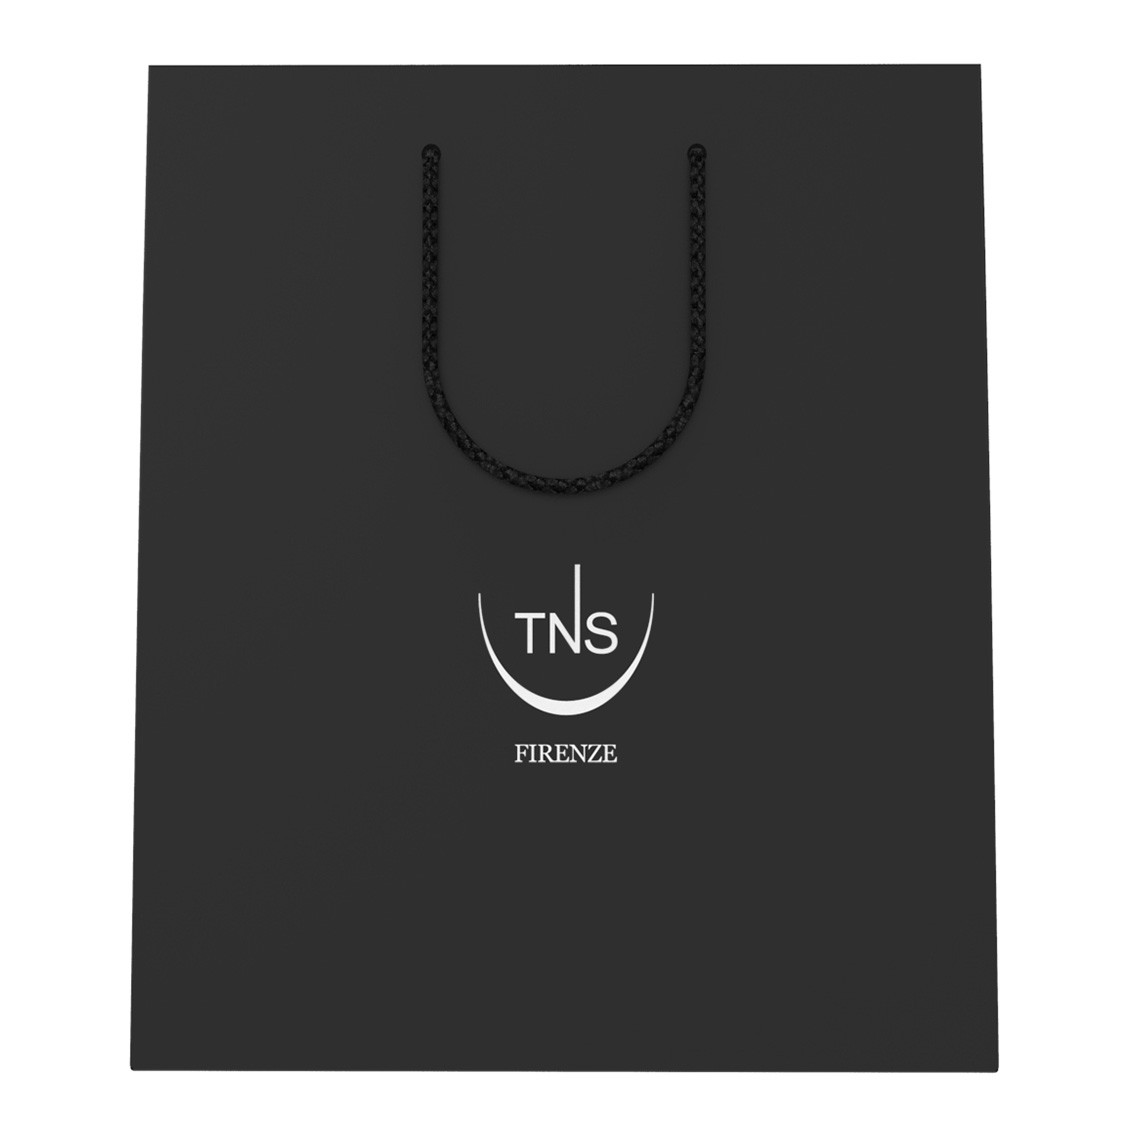 TNS black shopping bag 22 x 28 cm 1 pc